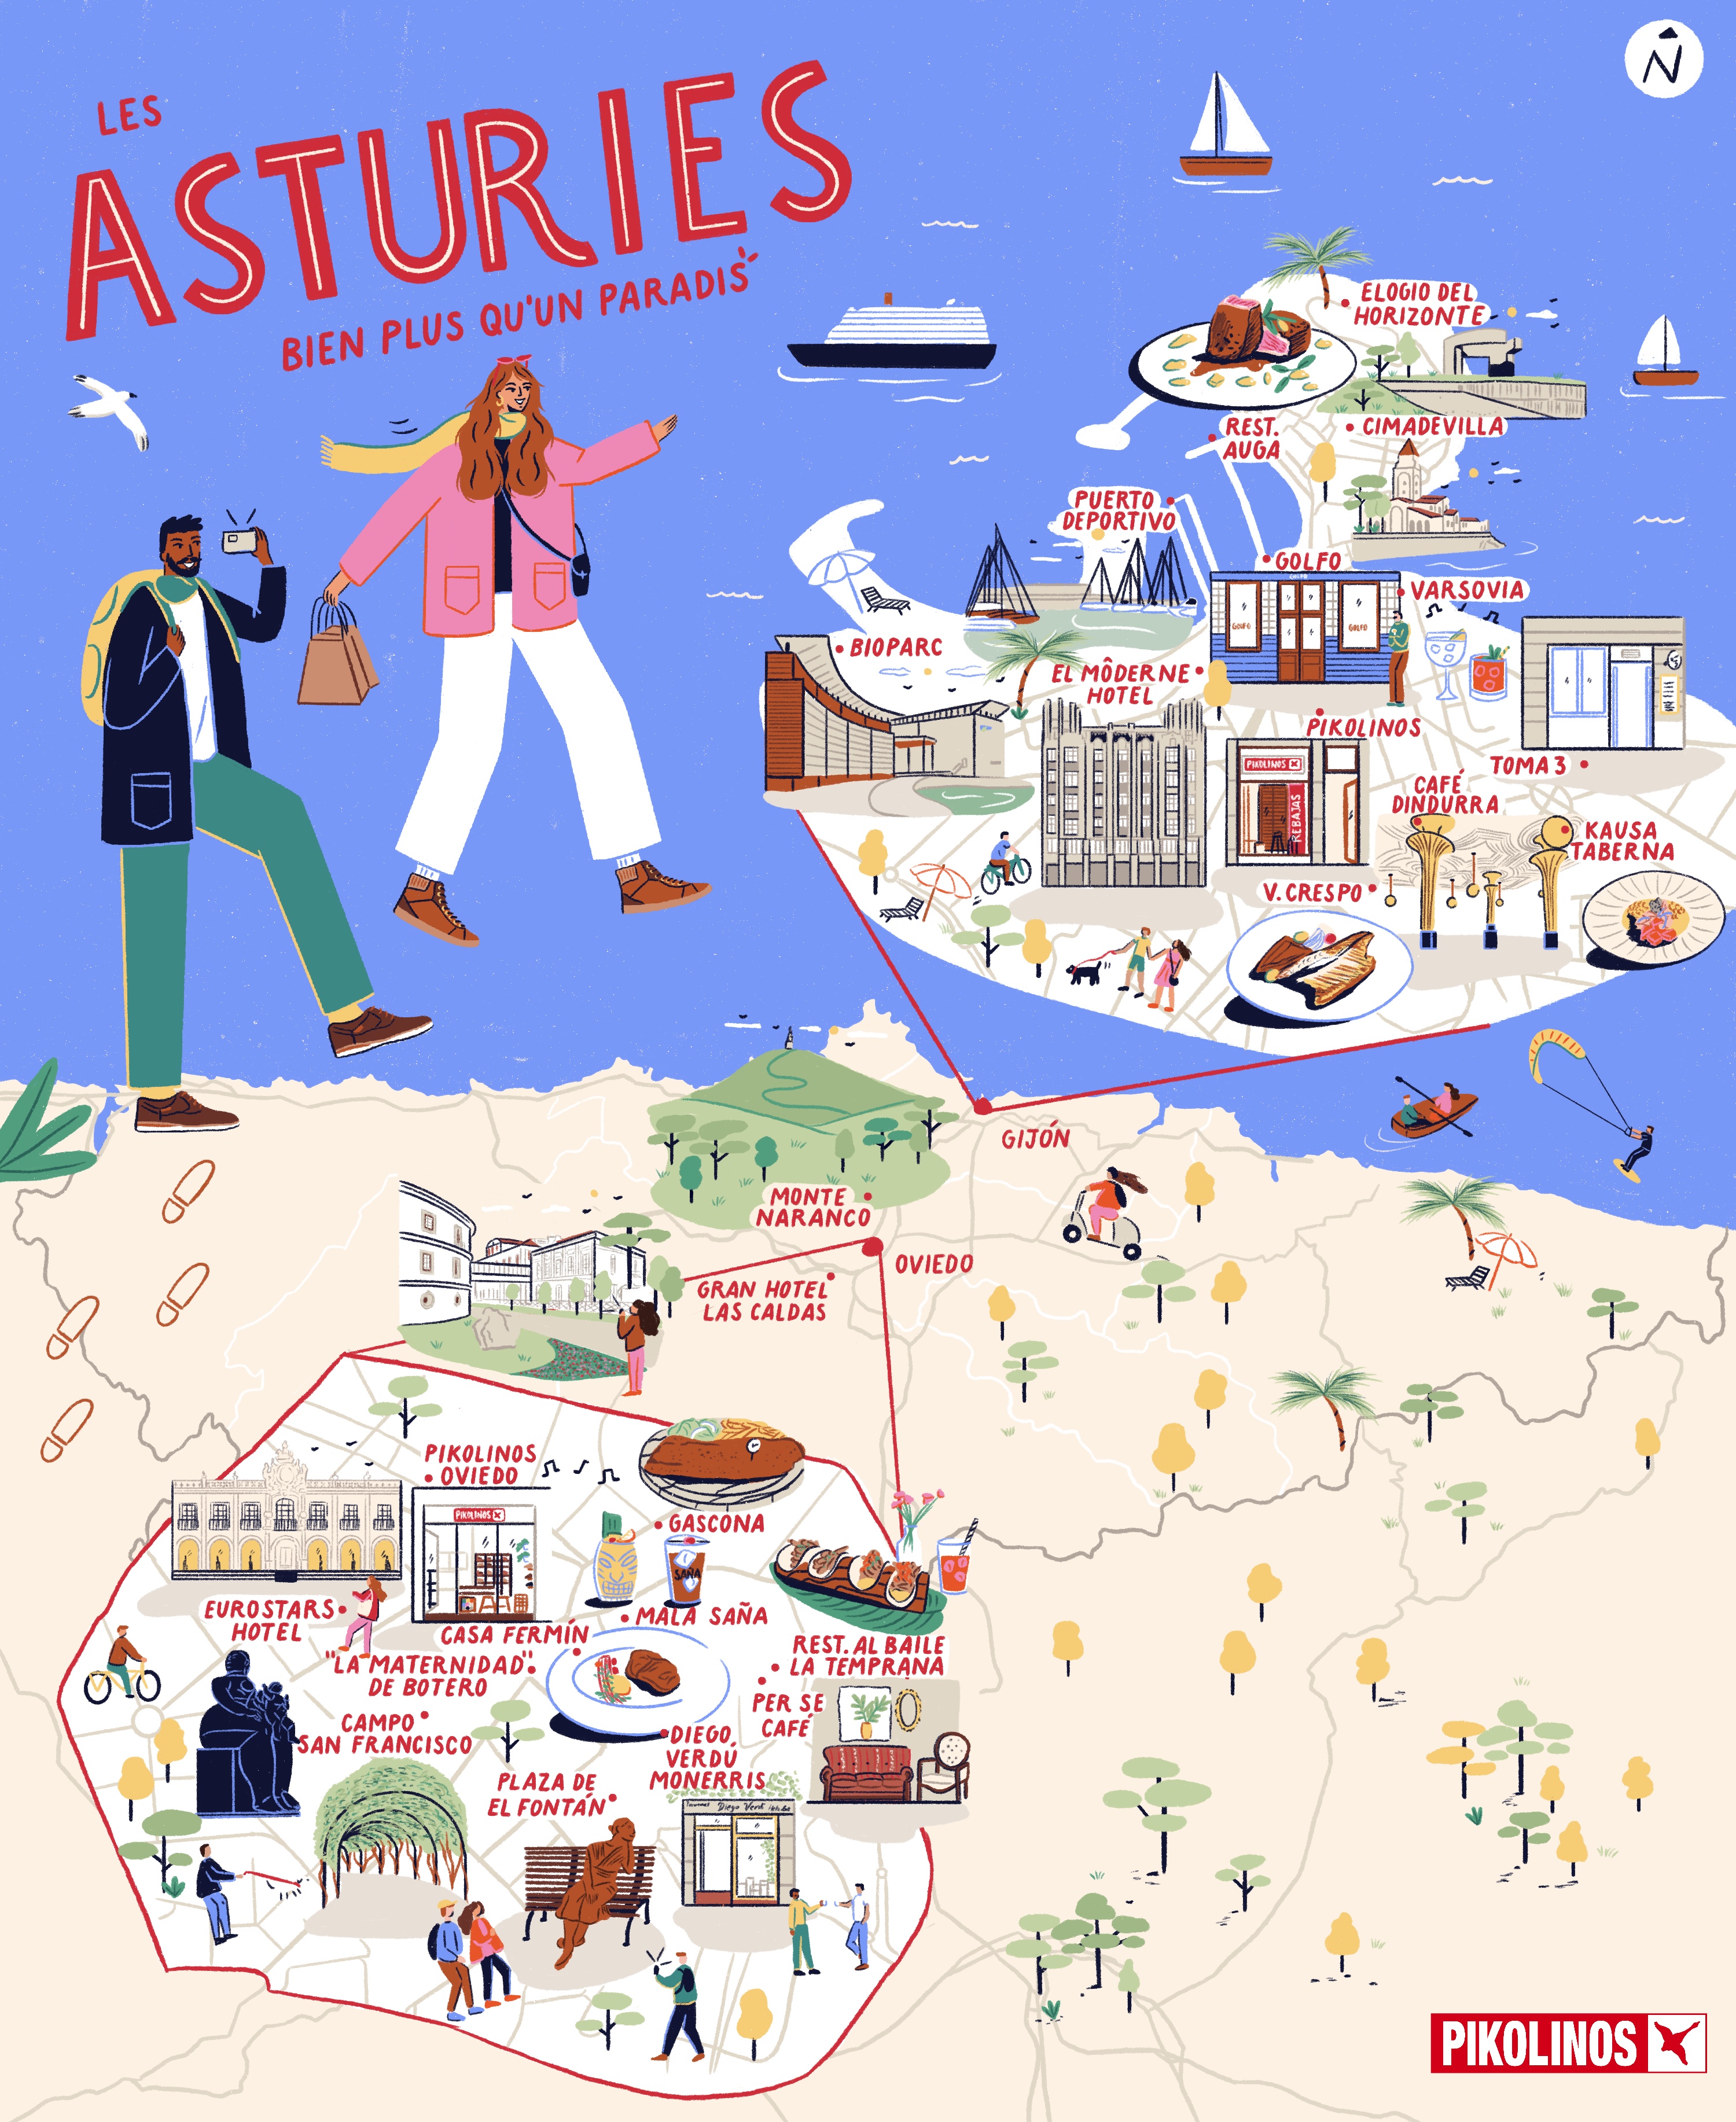 Illustration de la même carte des Asturies en miniature.
            